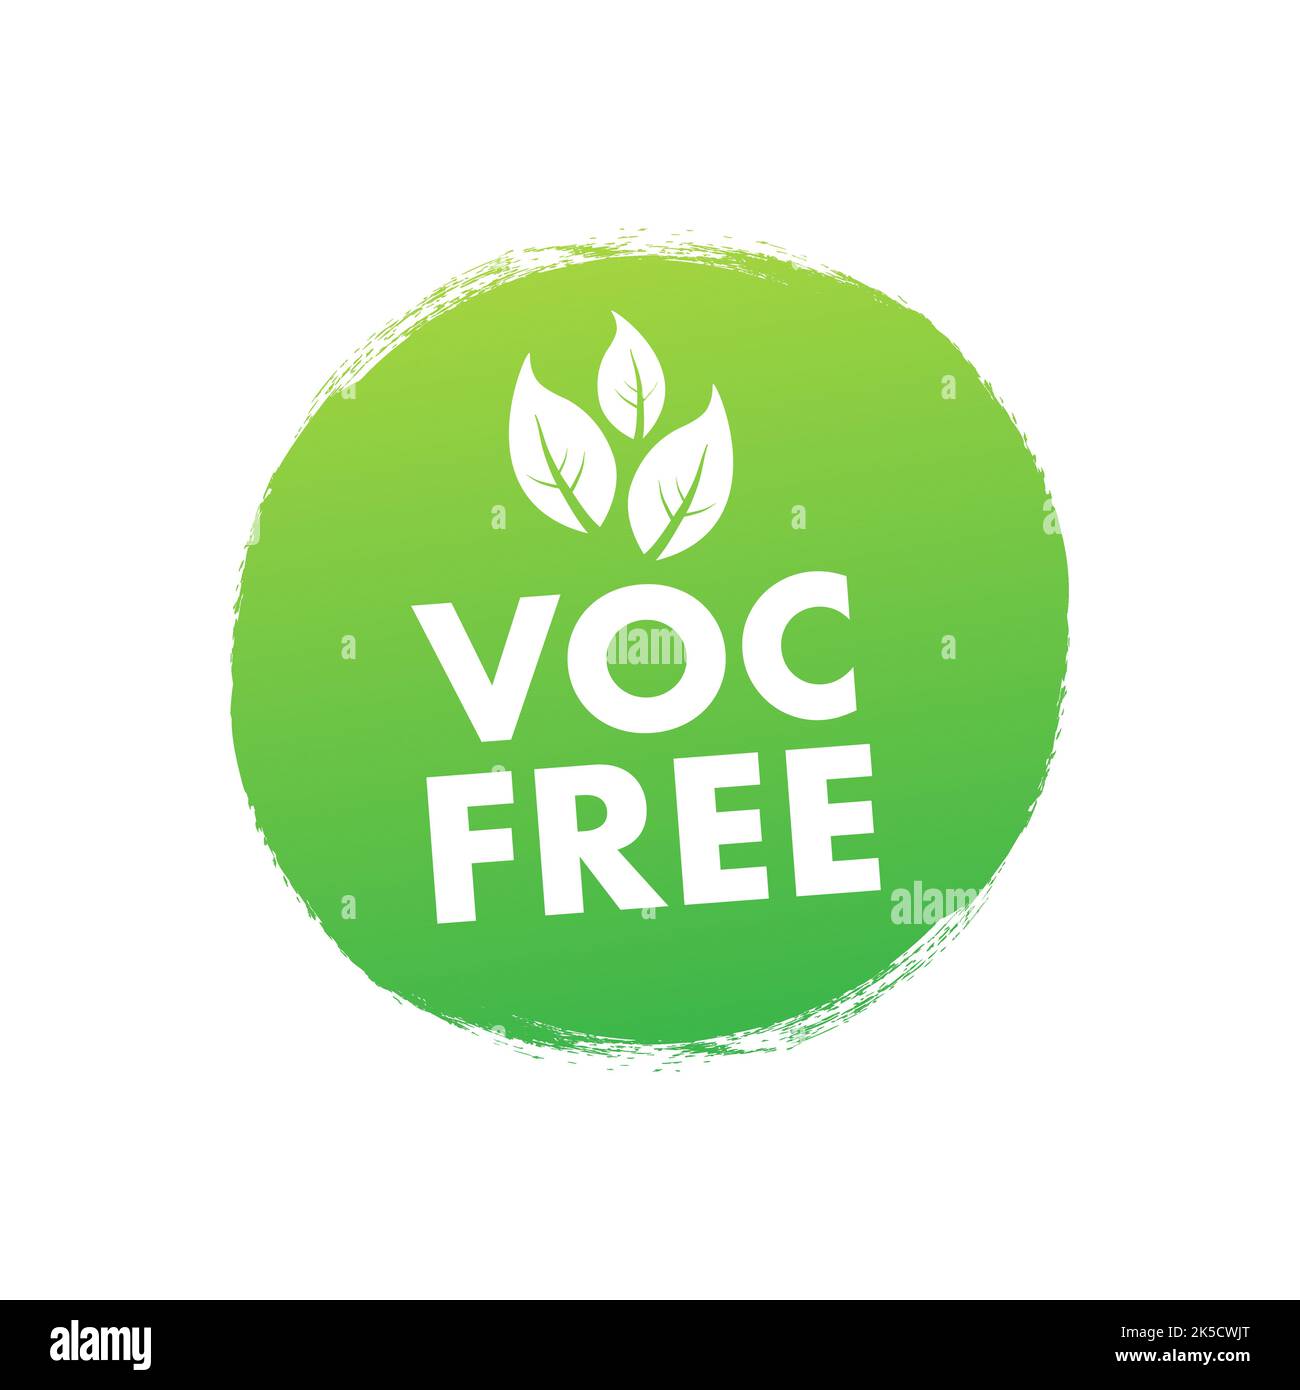 Sin COV. Resumen libre de compuestos orgánicos volátiles. Ilustración de stock vectorial Ilustración del Vector